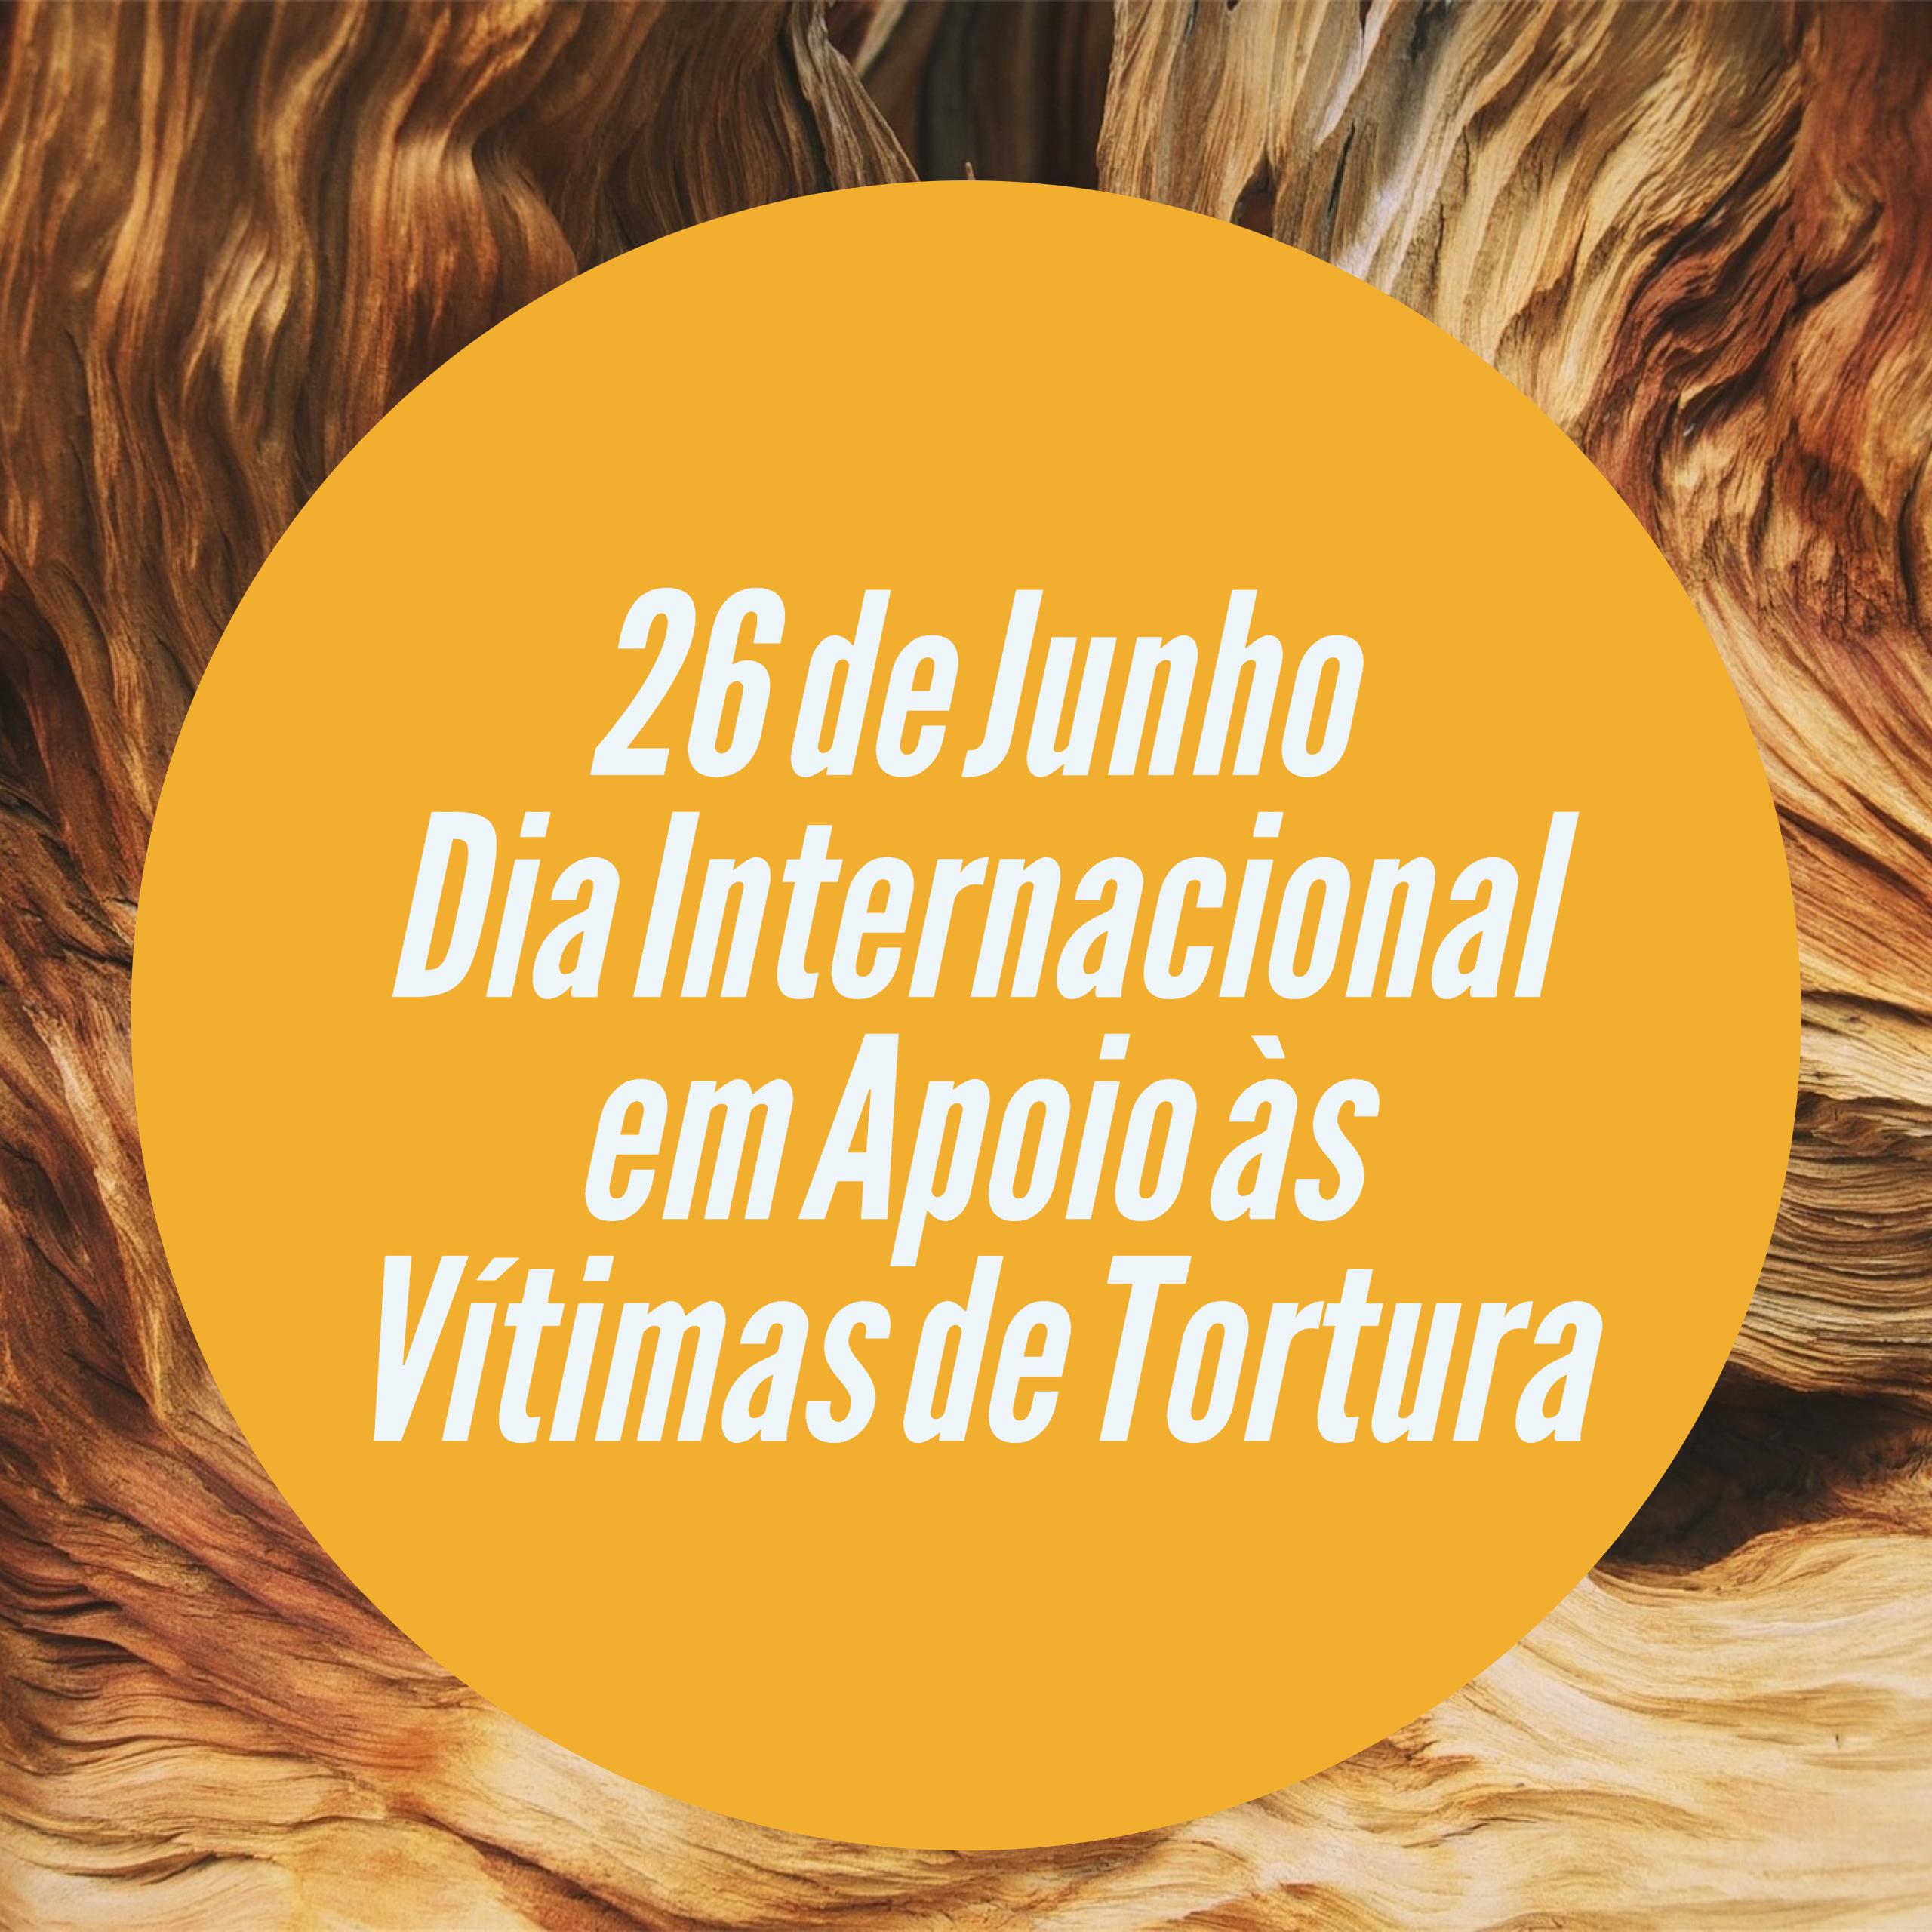 Dia Internacional em Apoio s Vtimas de Tortura